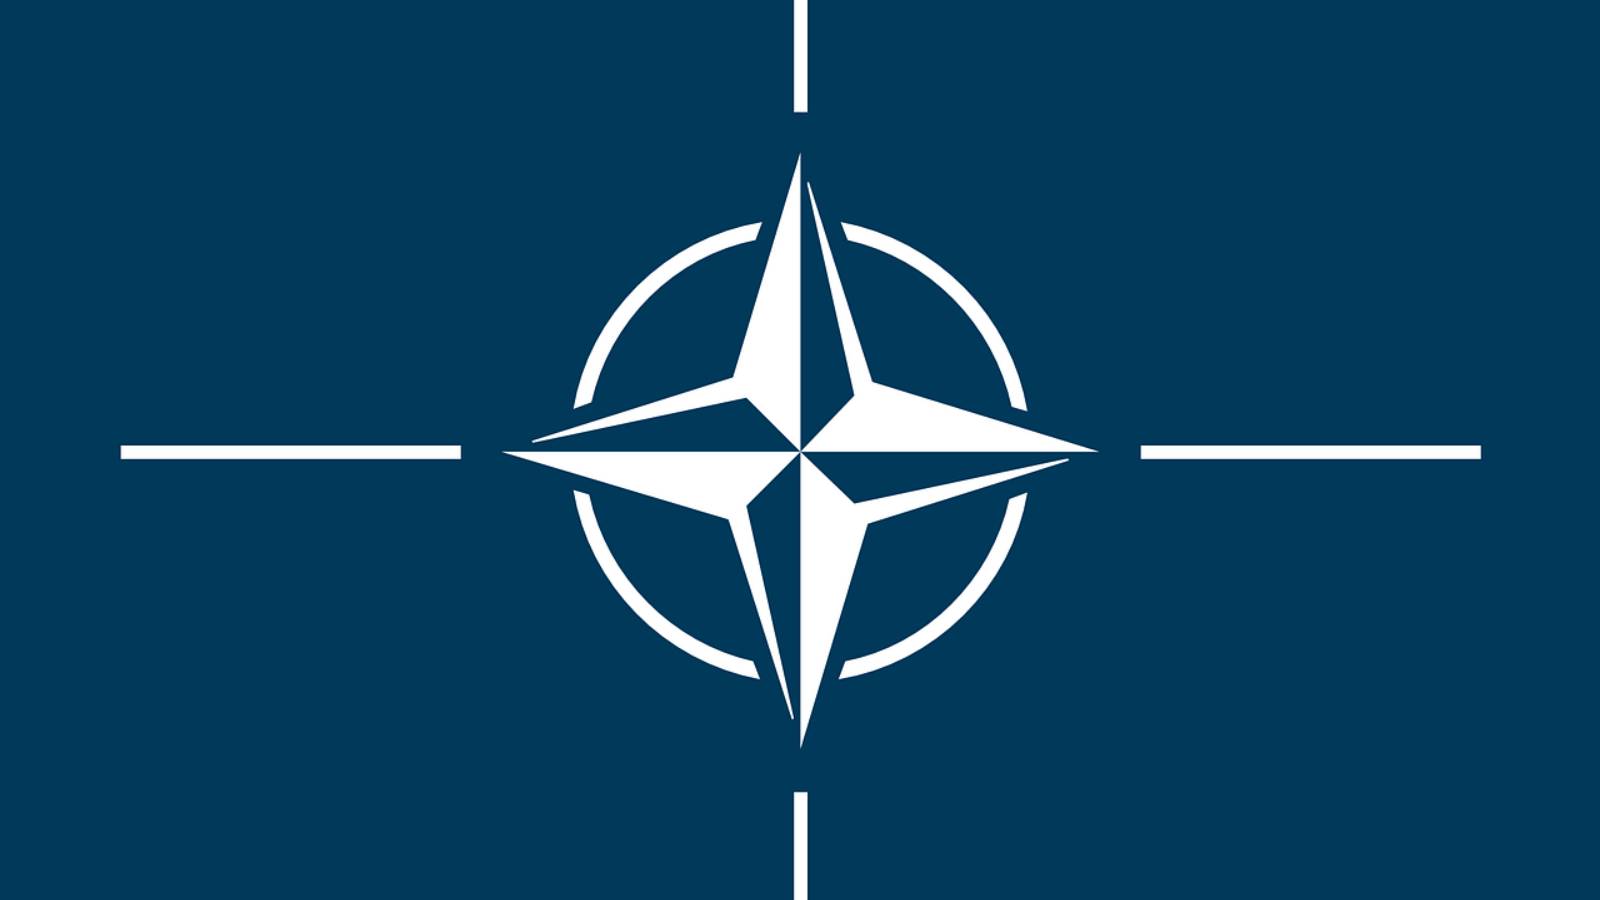 La OTAN realiza grandes ejercicios aéreos multinacionales en Rumania